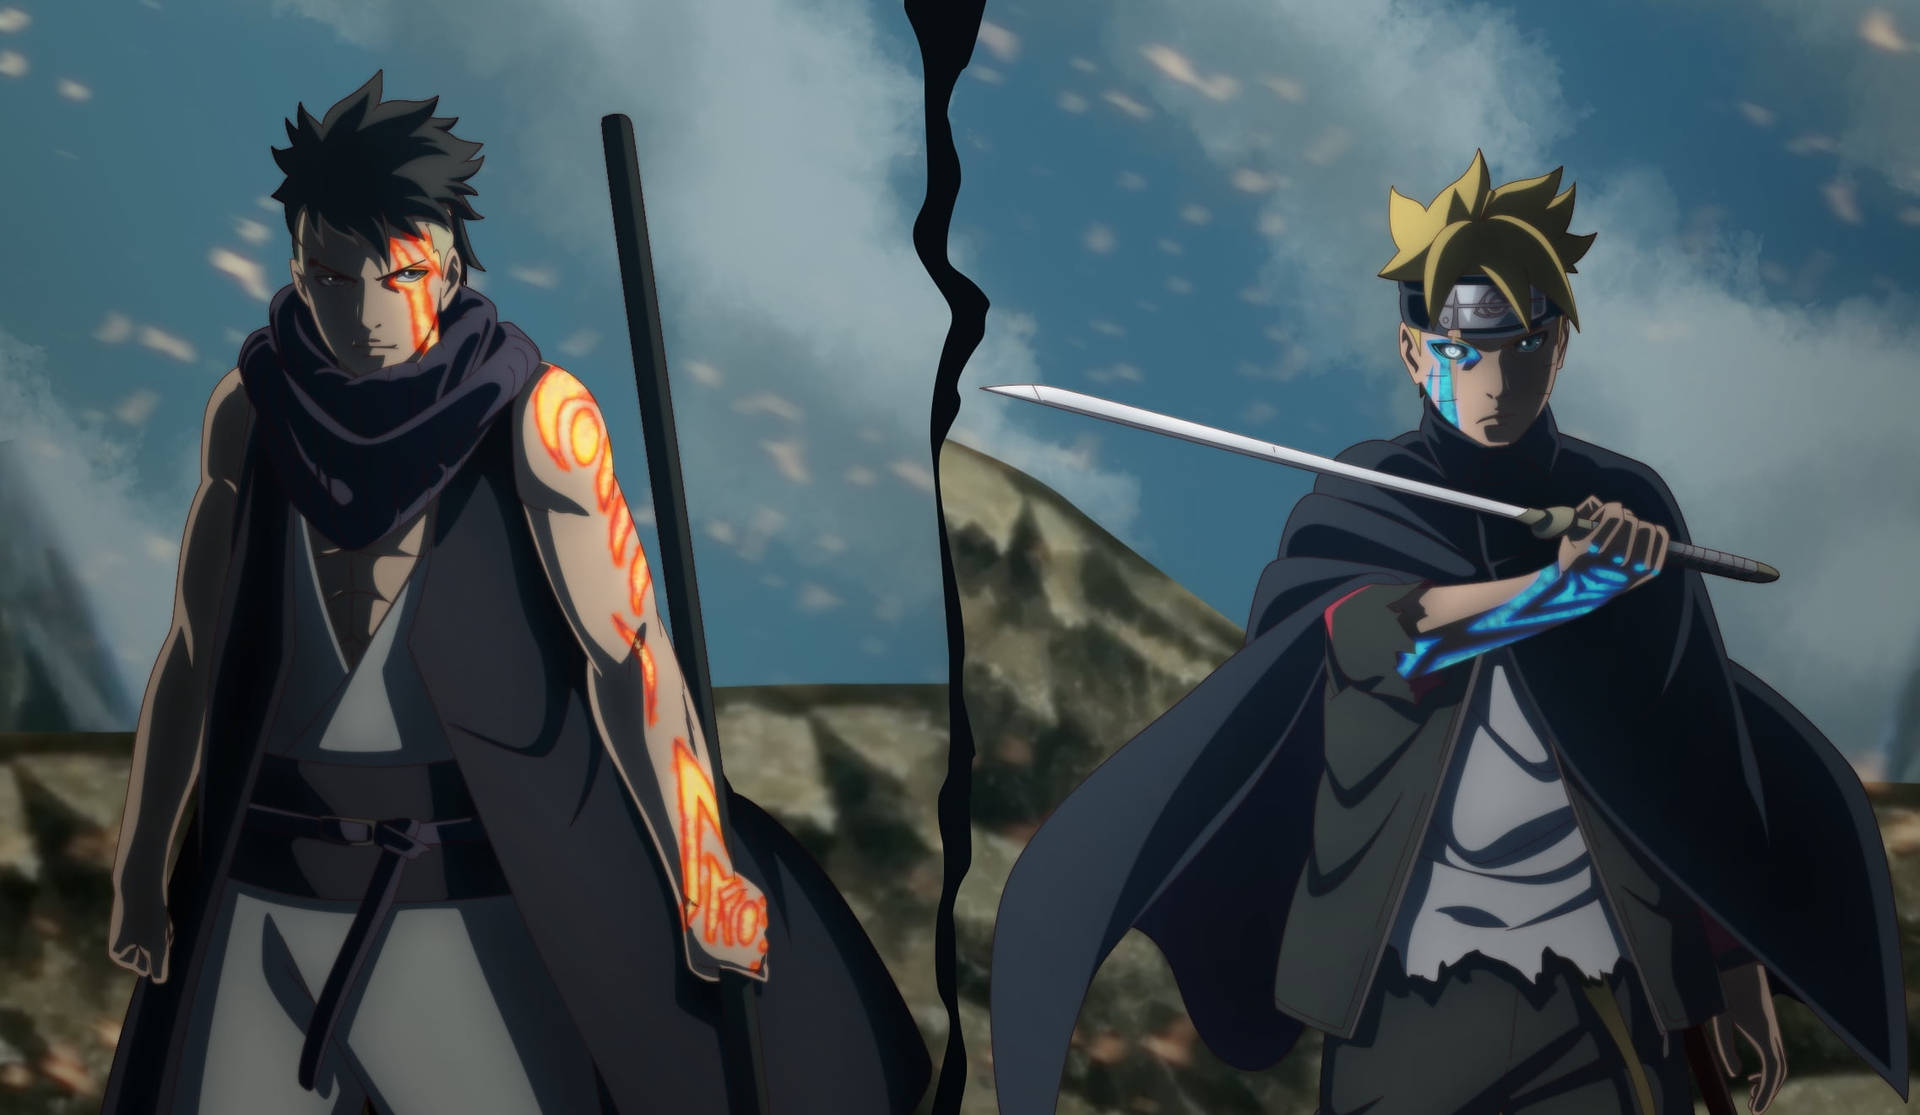 Anime Naruto HD Wallpaper by IIYametaII